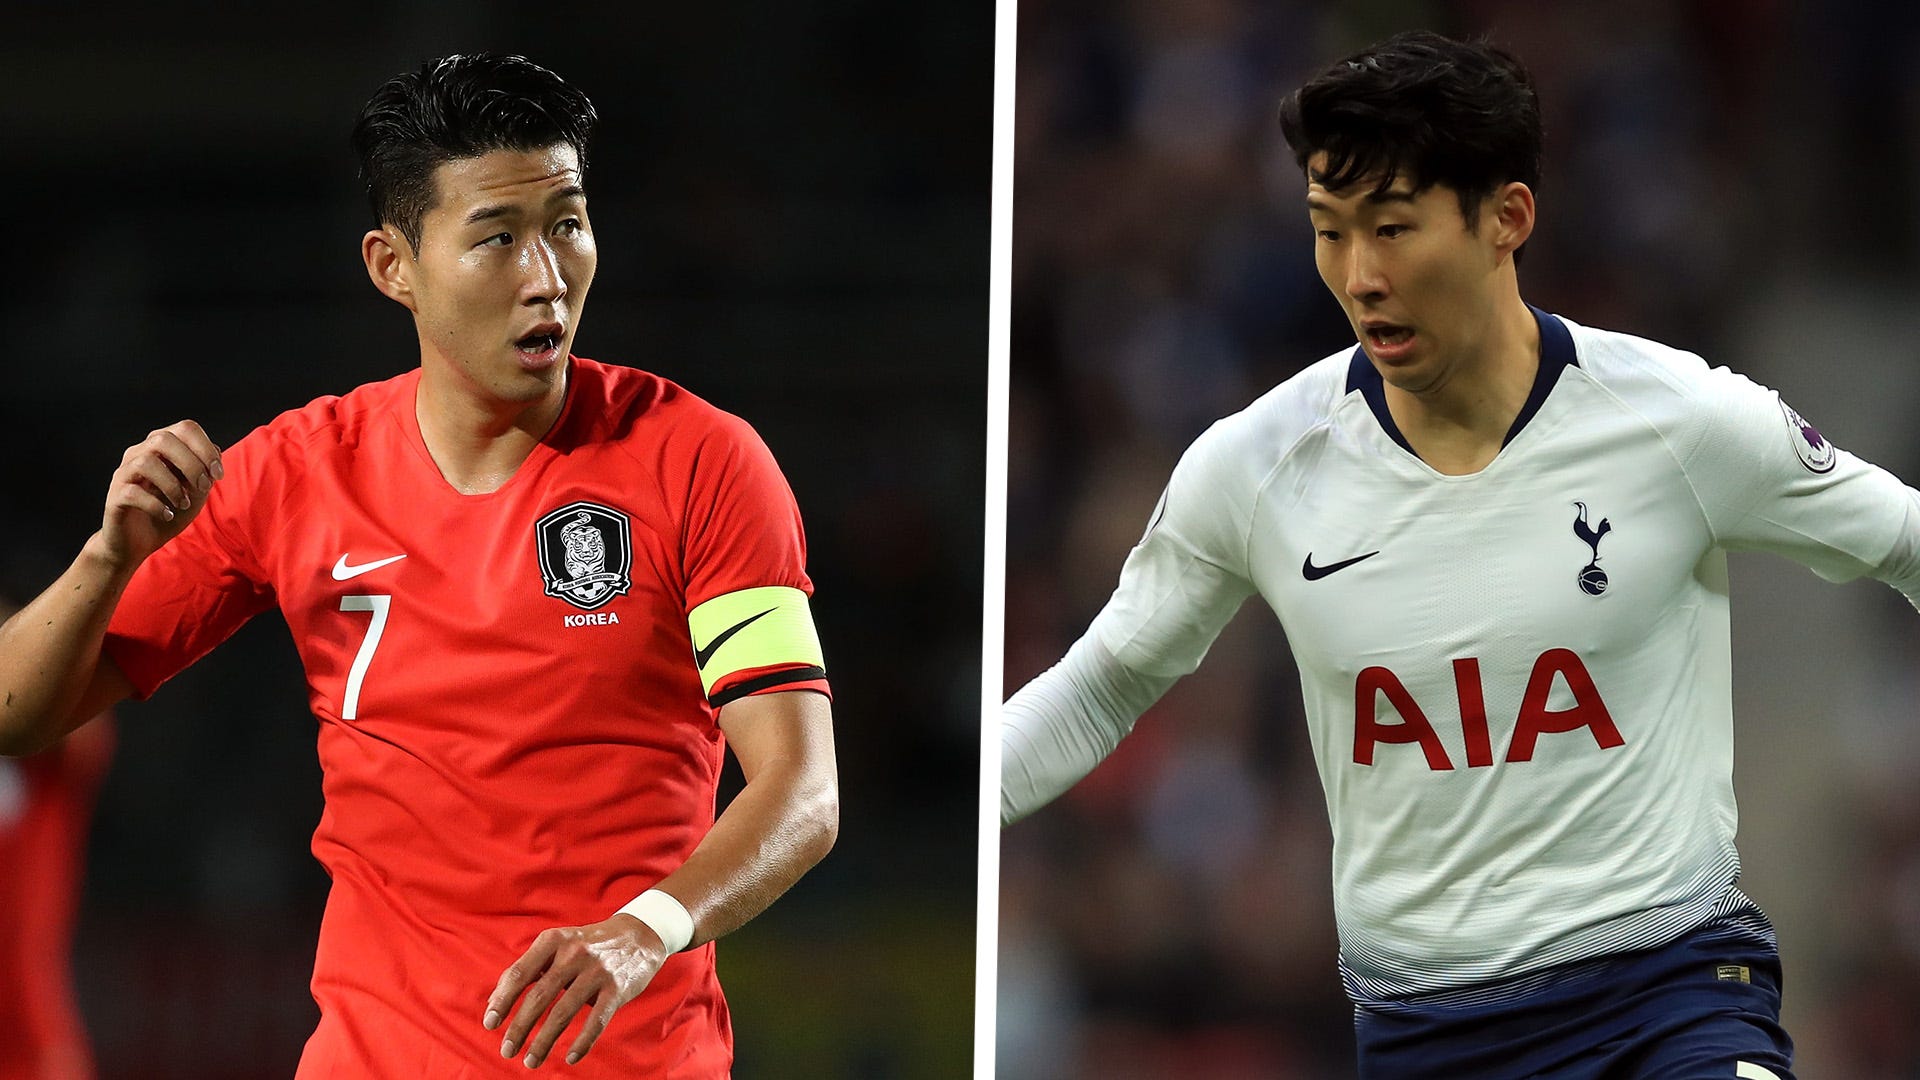 Football : Son Heung-min, le joueur coréen de Tottenham, a rajeuni d'un an  ! - Le Parisien